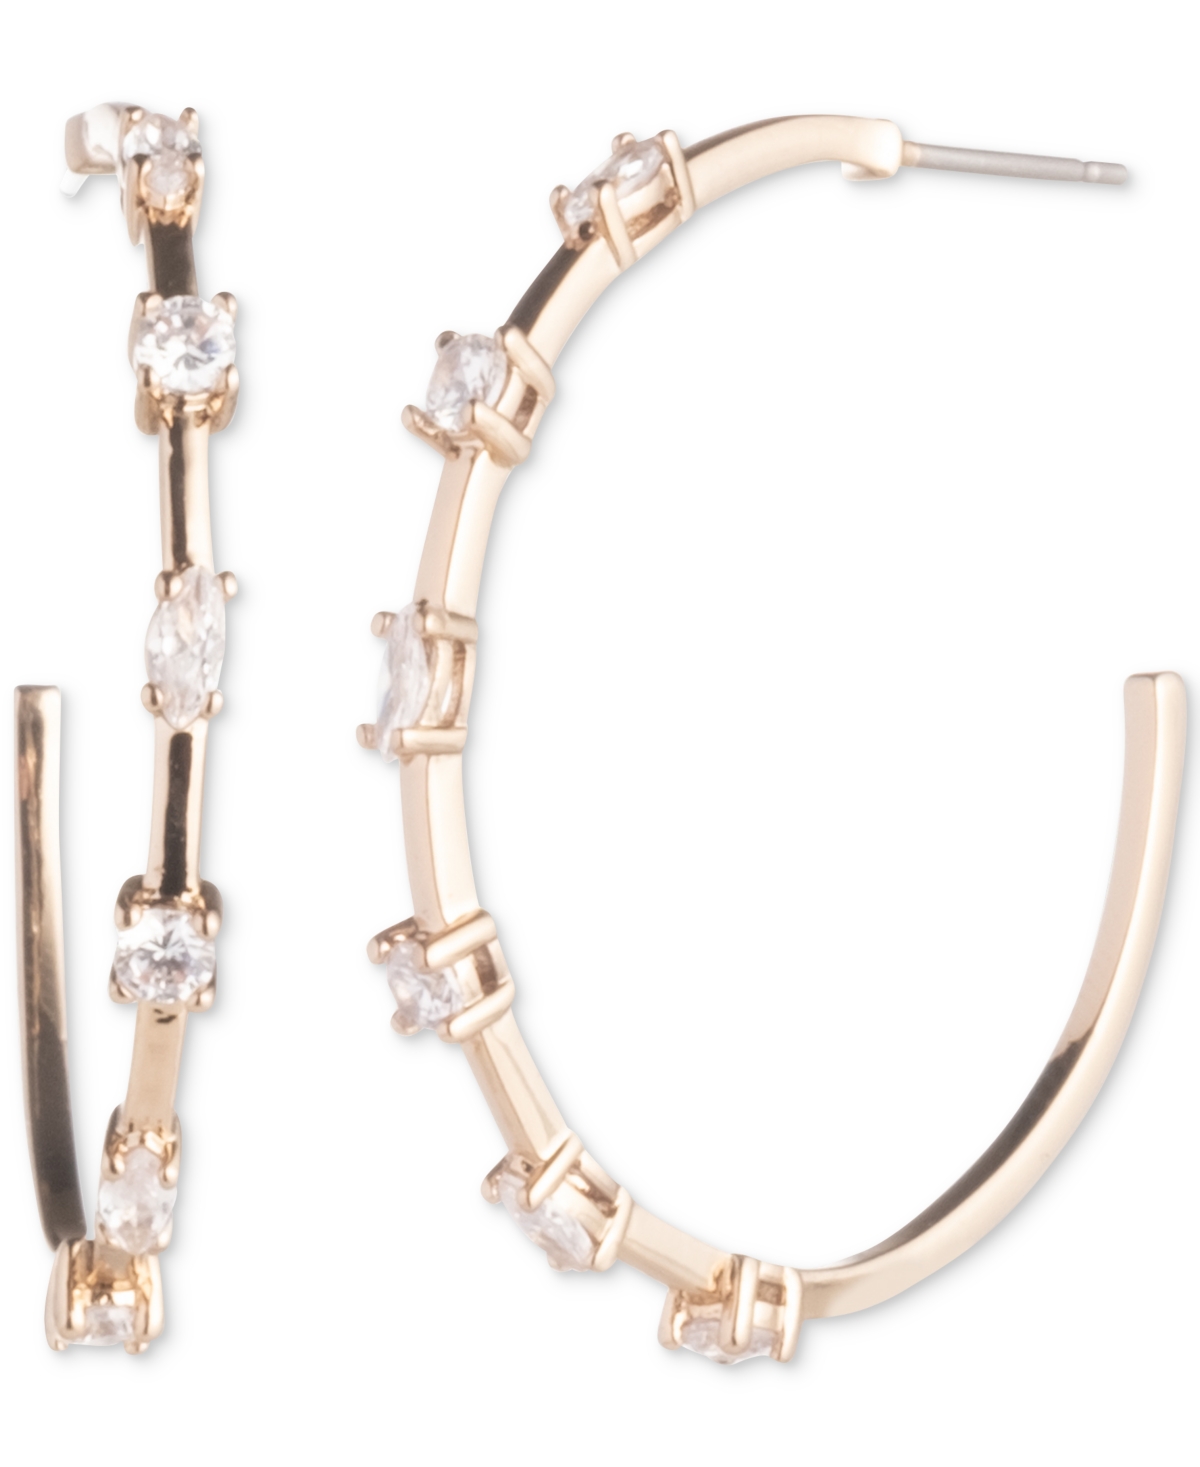 Gold-Tone Crystal C Hoop Earrings, 1" - White